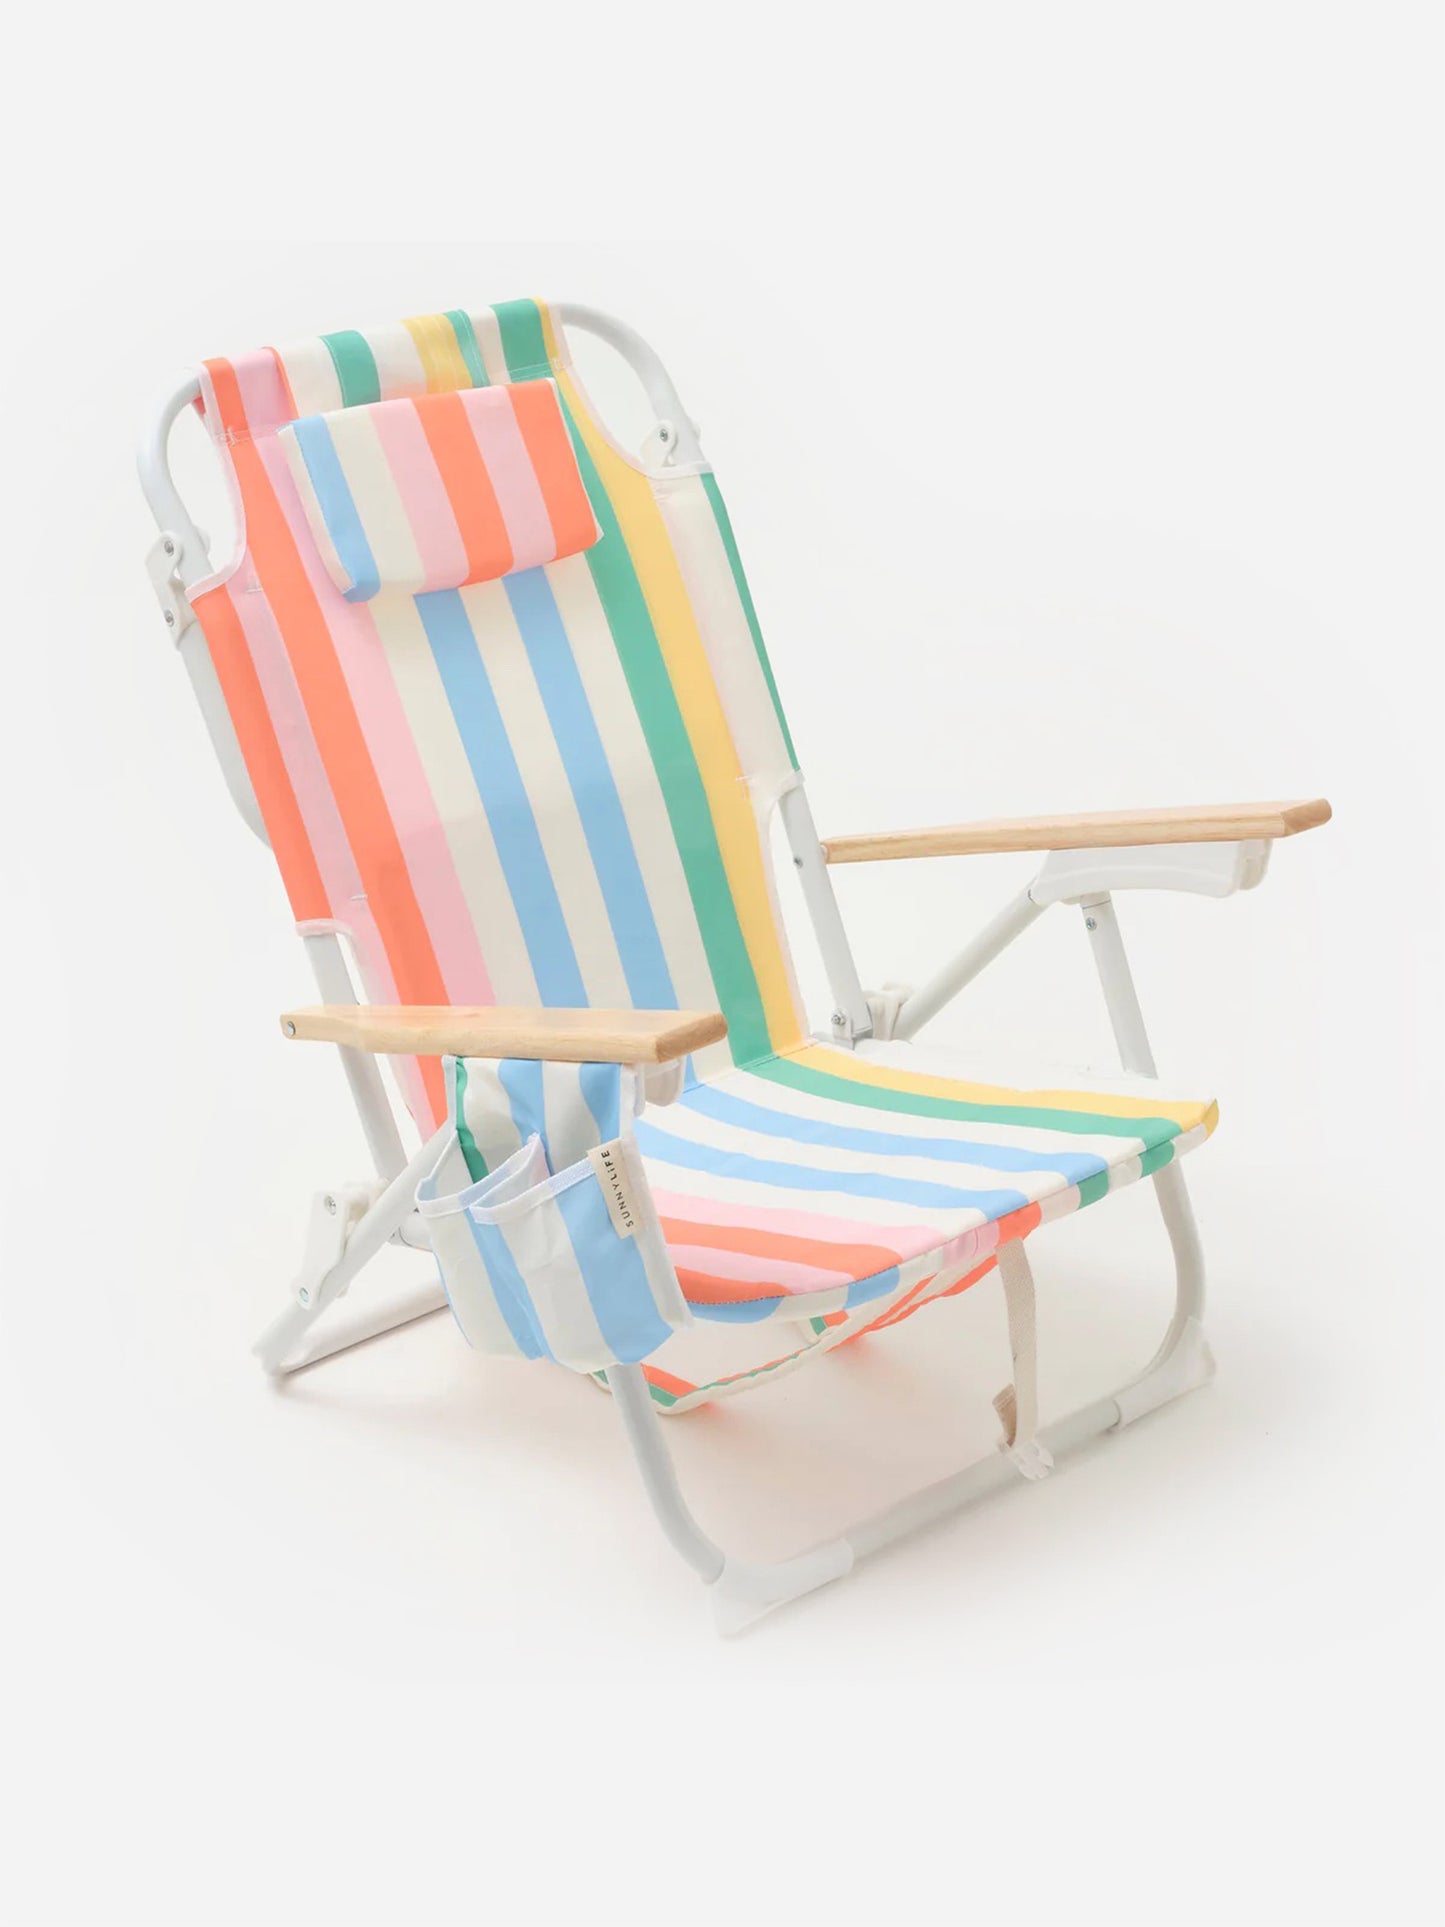 Sunnylife Deluxe Beach Chair